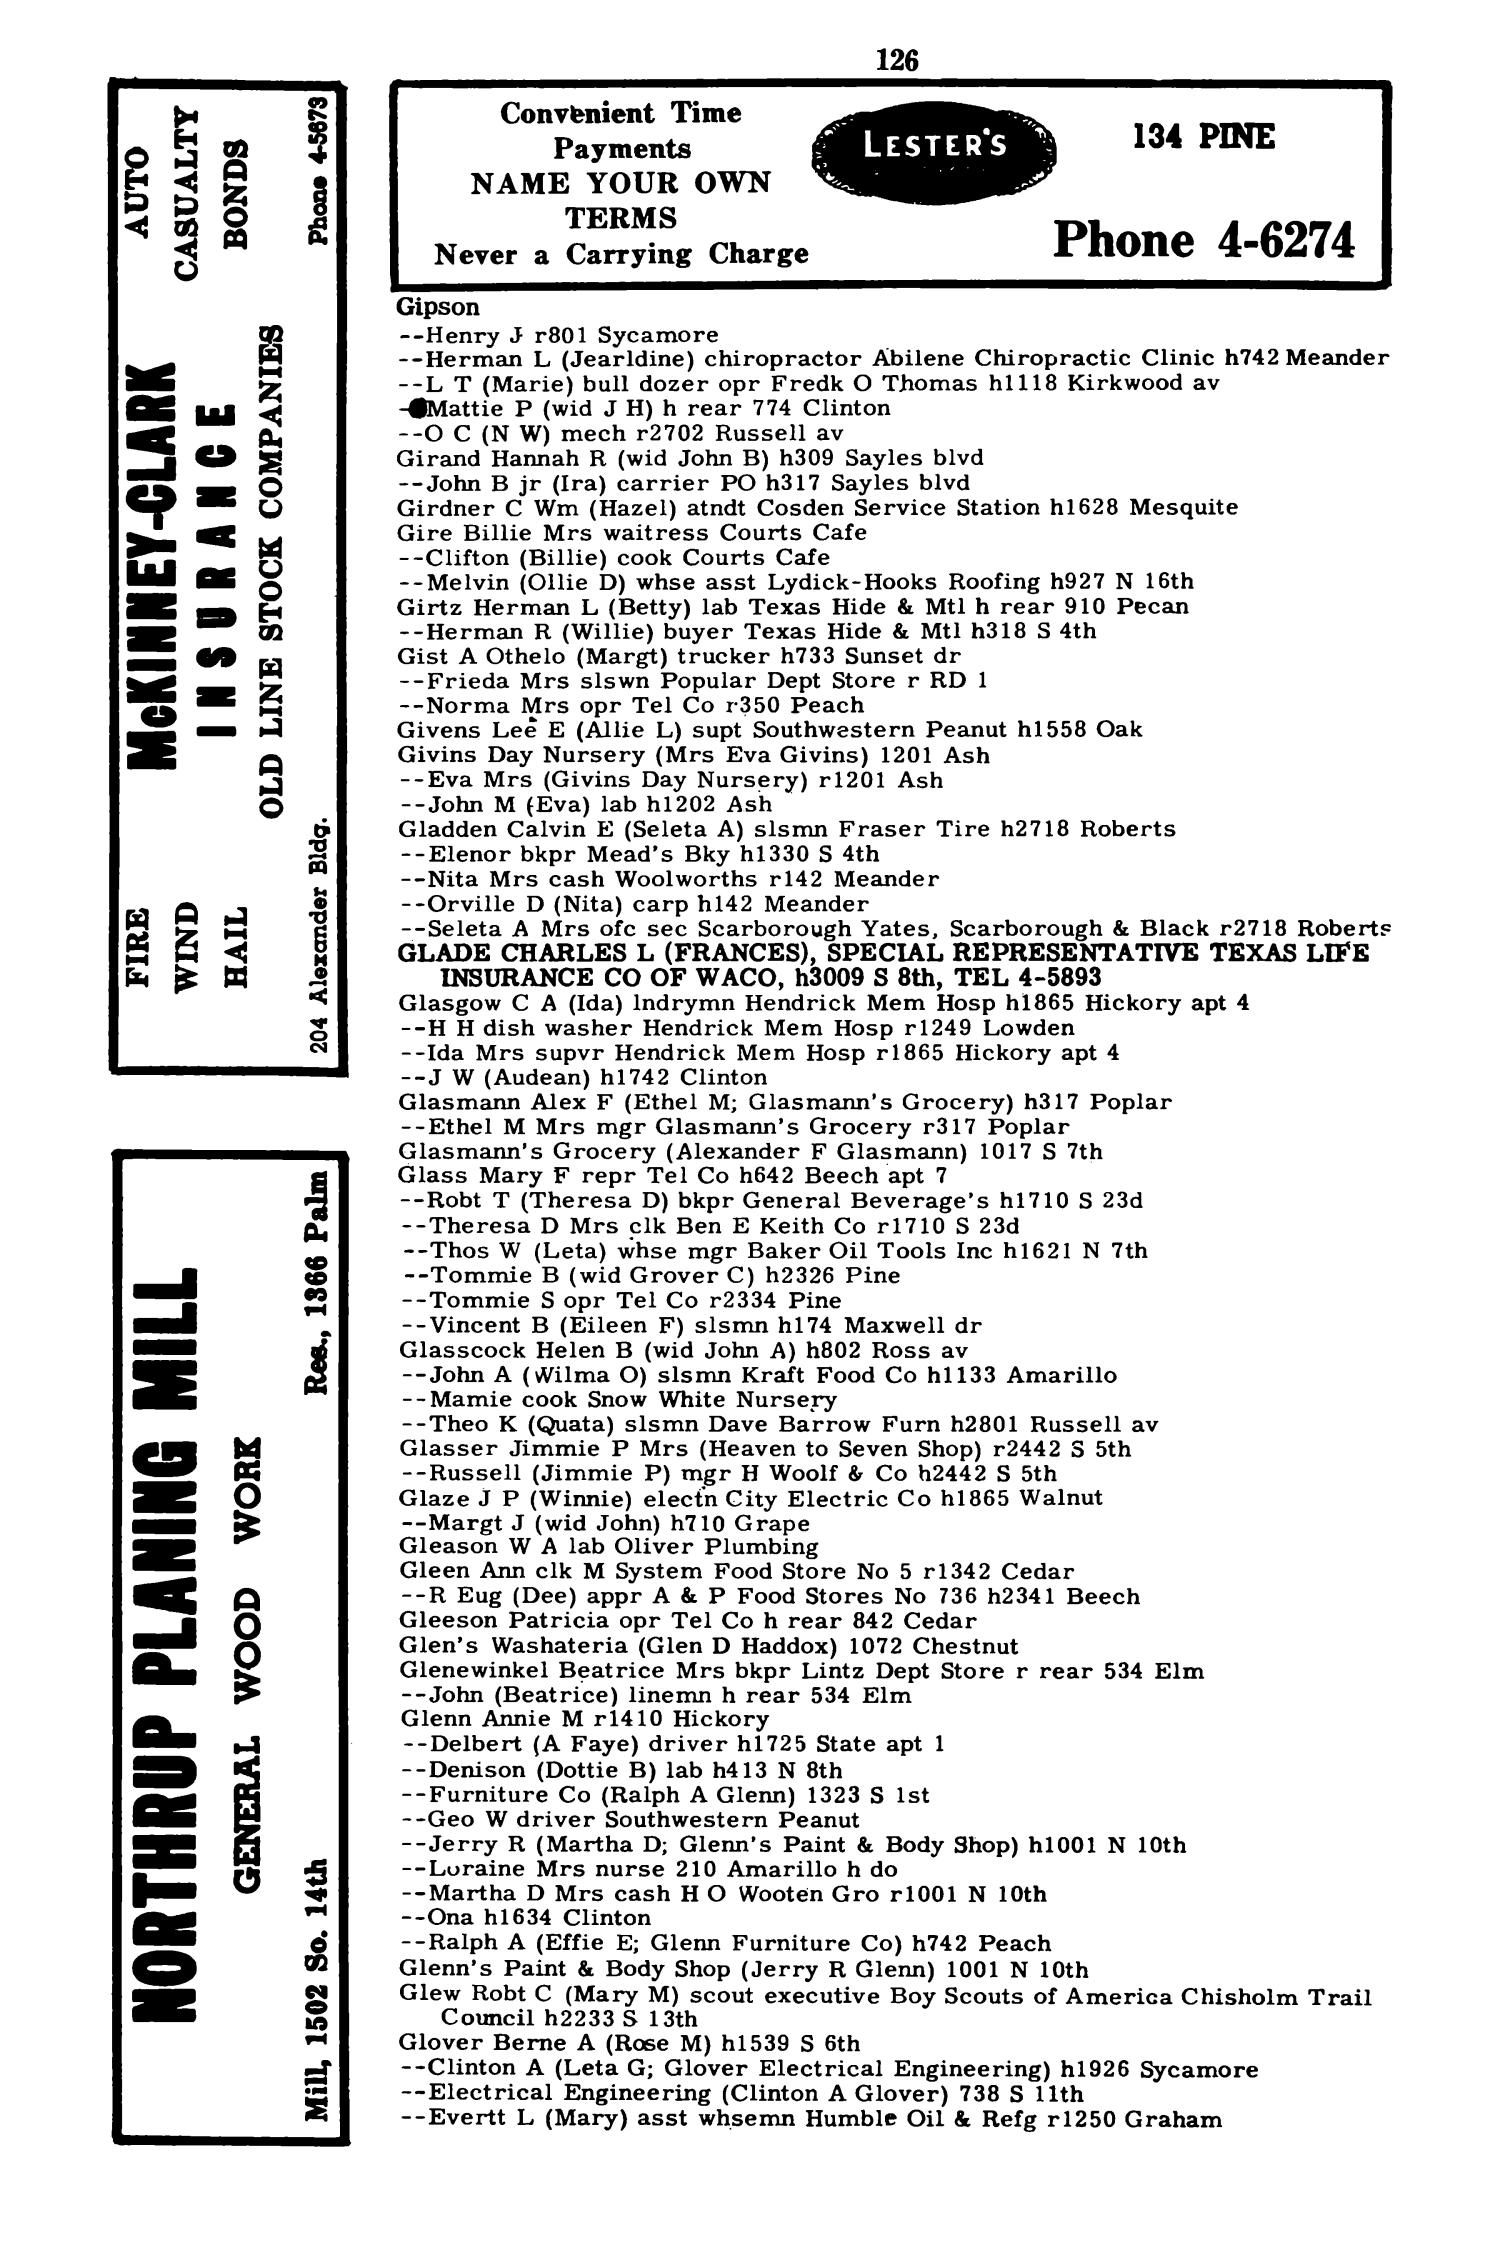 Worley's Abilene (Taylor County, Texas) City Directory, 1951
                                                
                                                    126
                                                